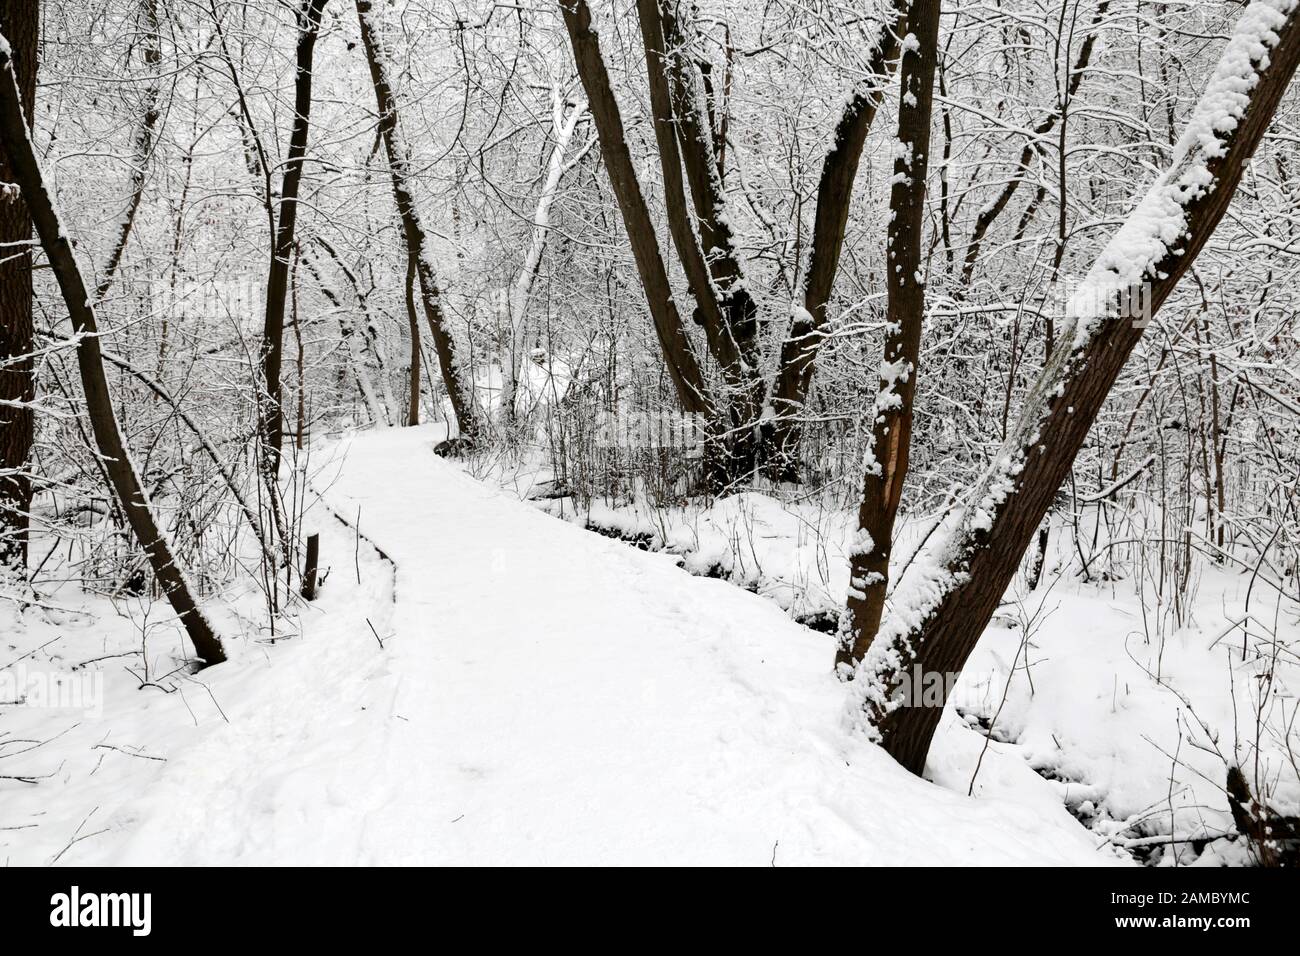 Sentier en forêt d'hiver, piste enneigée et arbres, vue pittoresque. La nature après la chute de neige, temps froid Banque D'Images